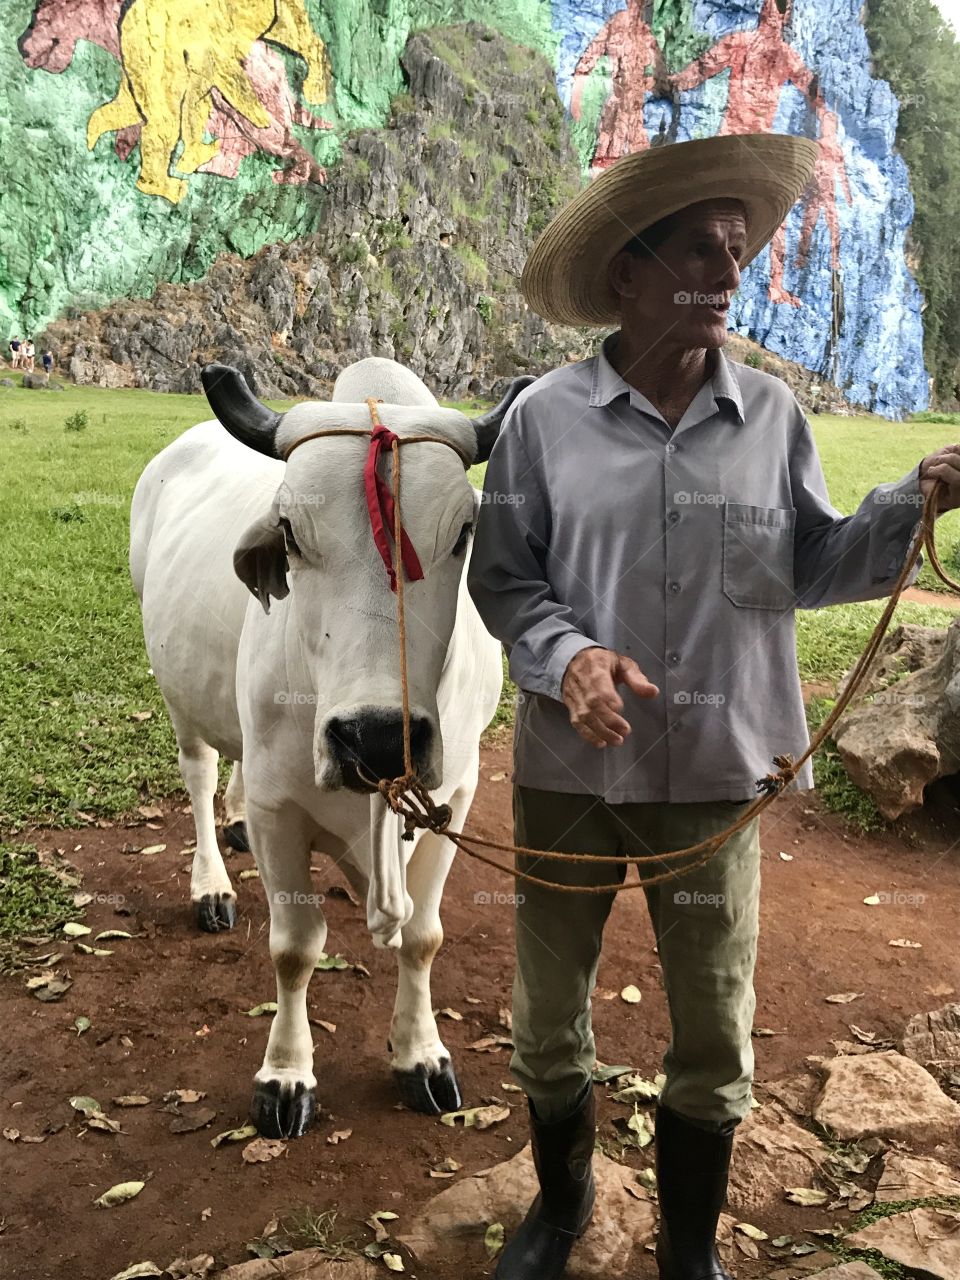 Bulls in Cuba